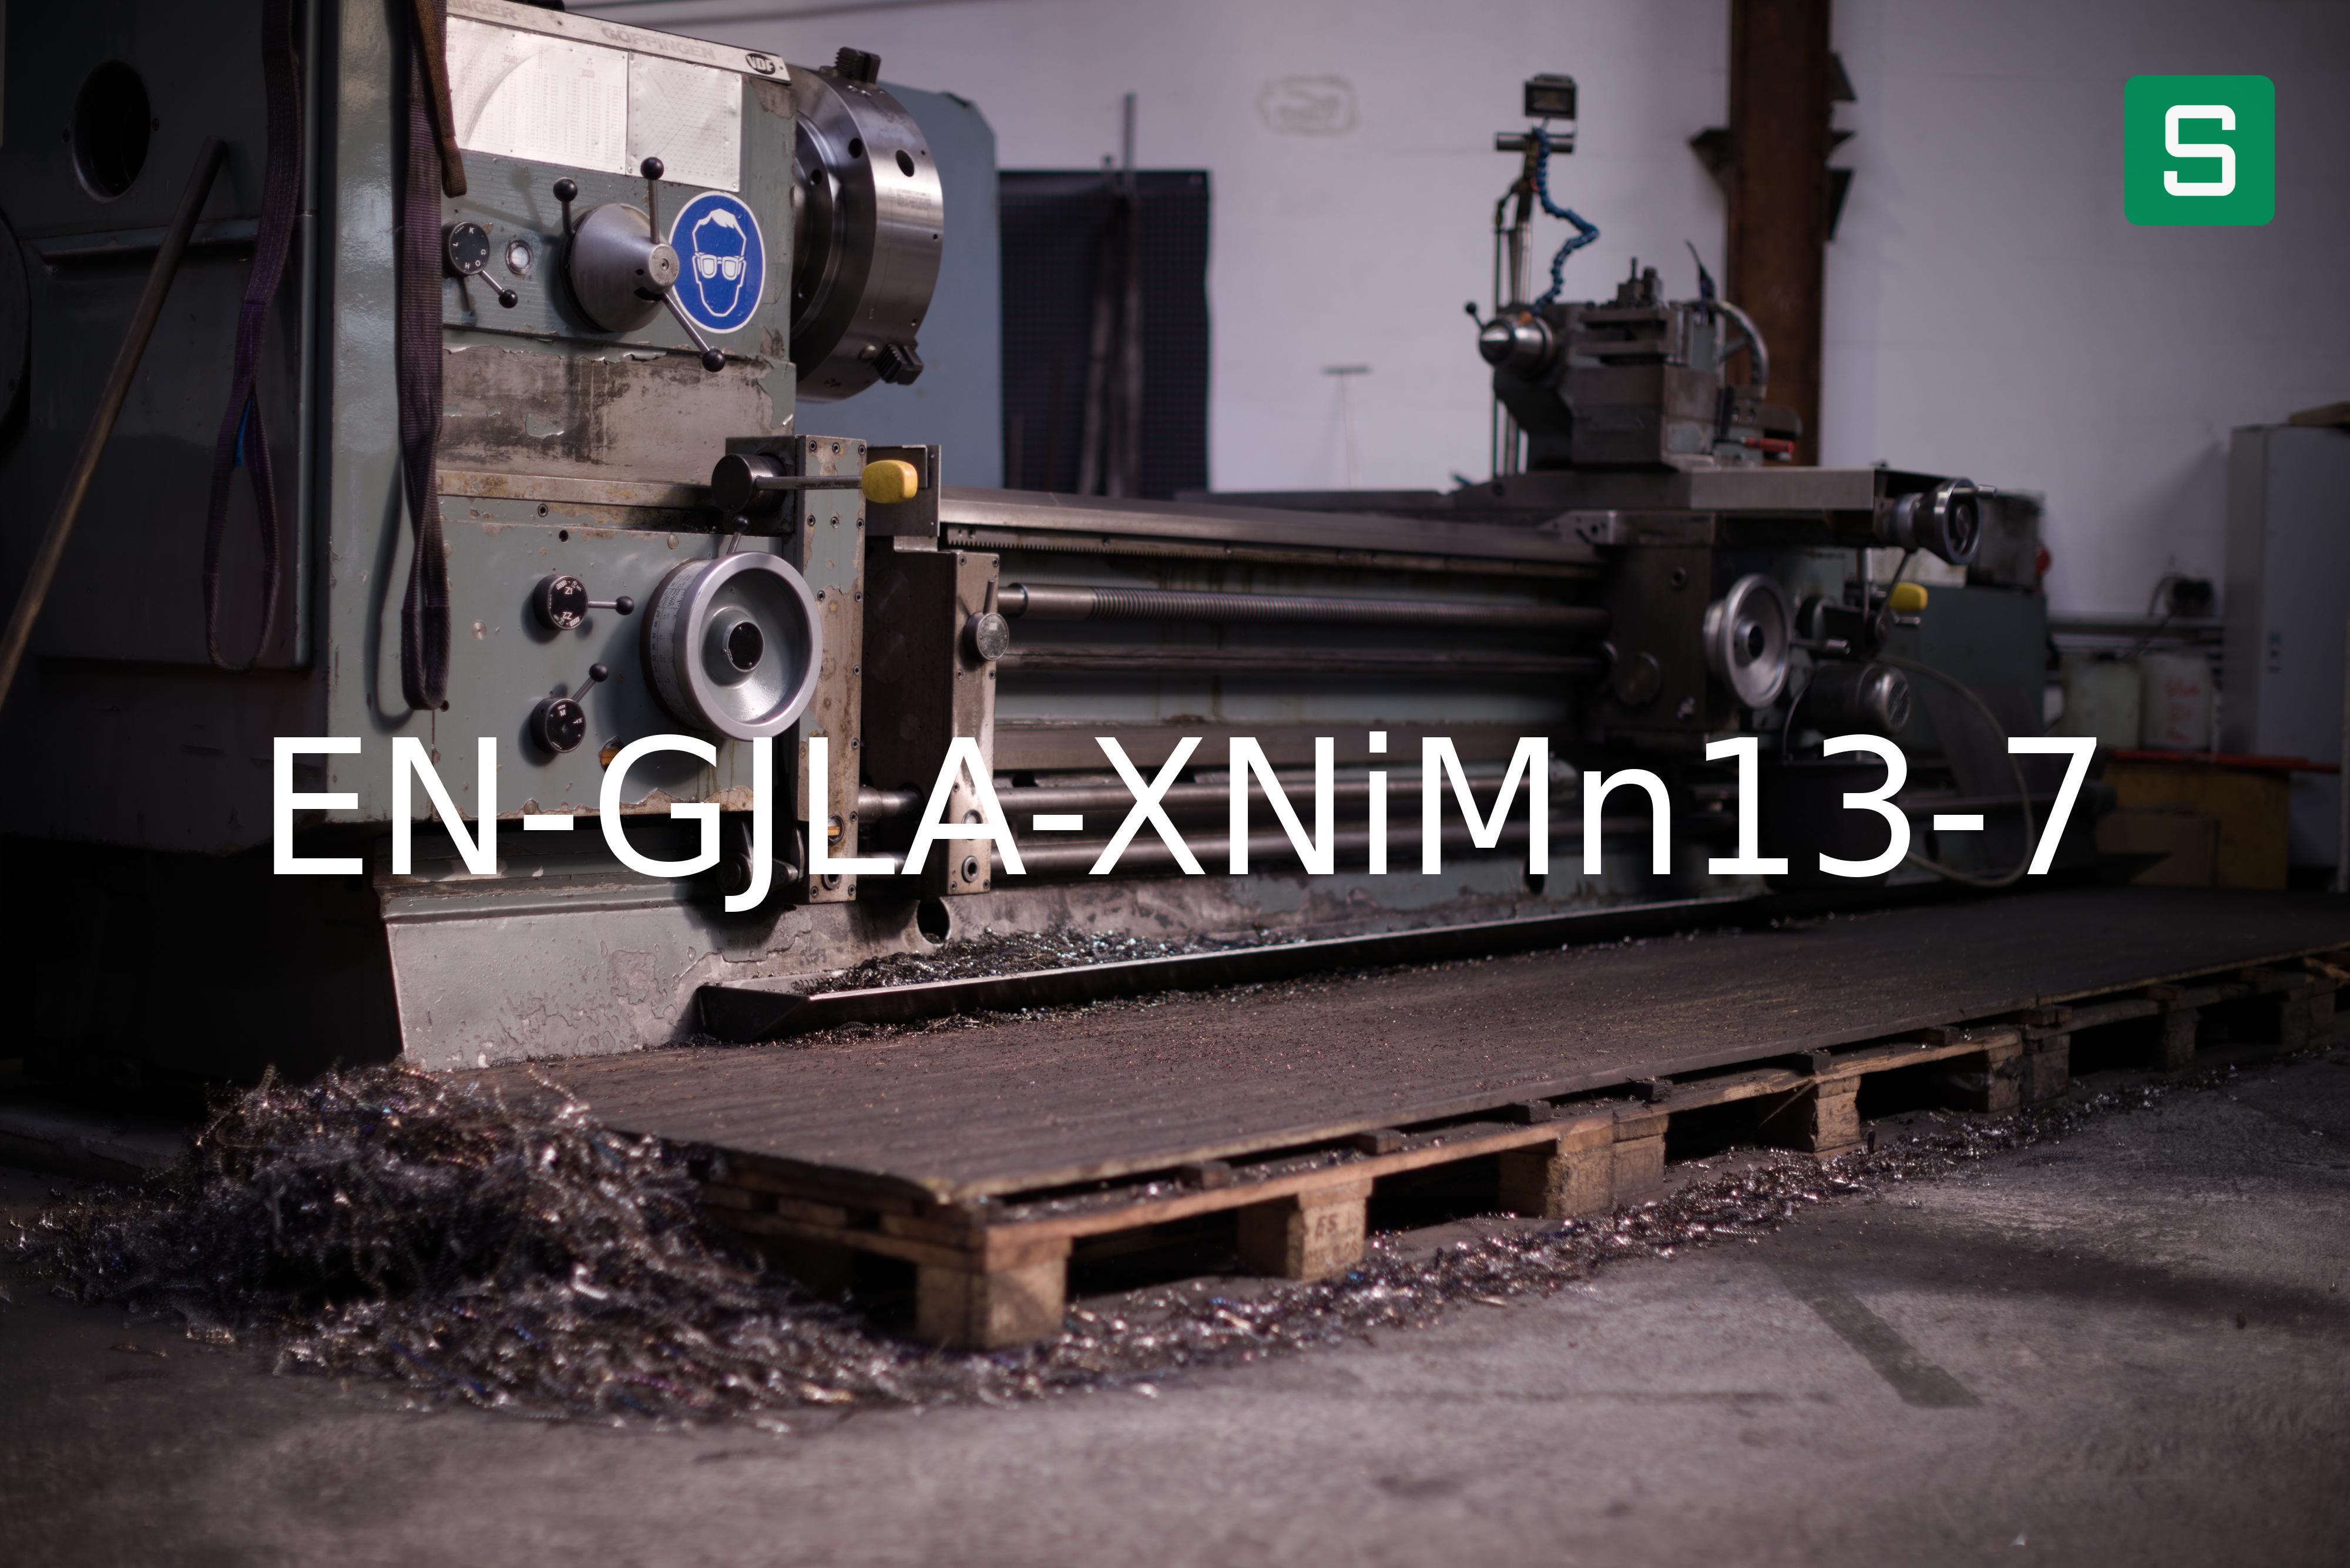 Steel Material: EN-GJLA-XNiMn13-7